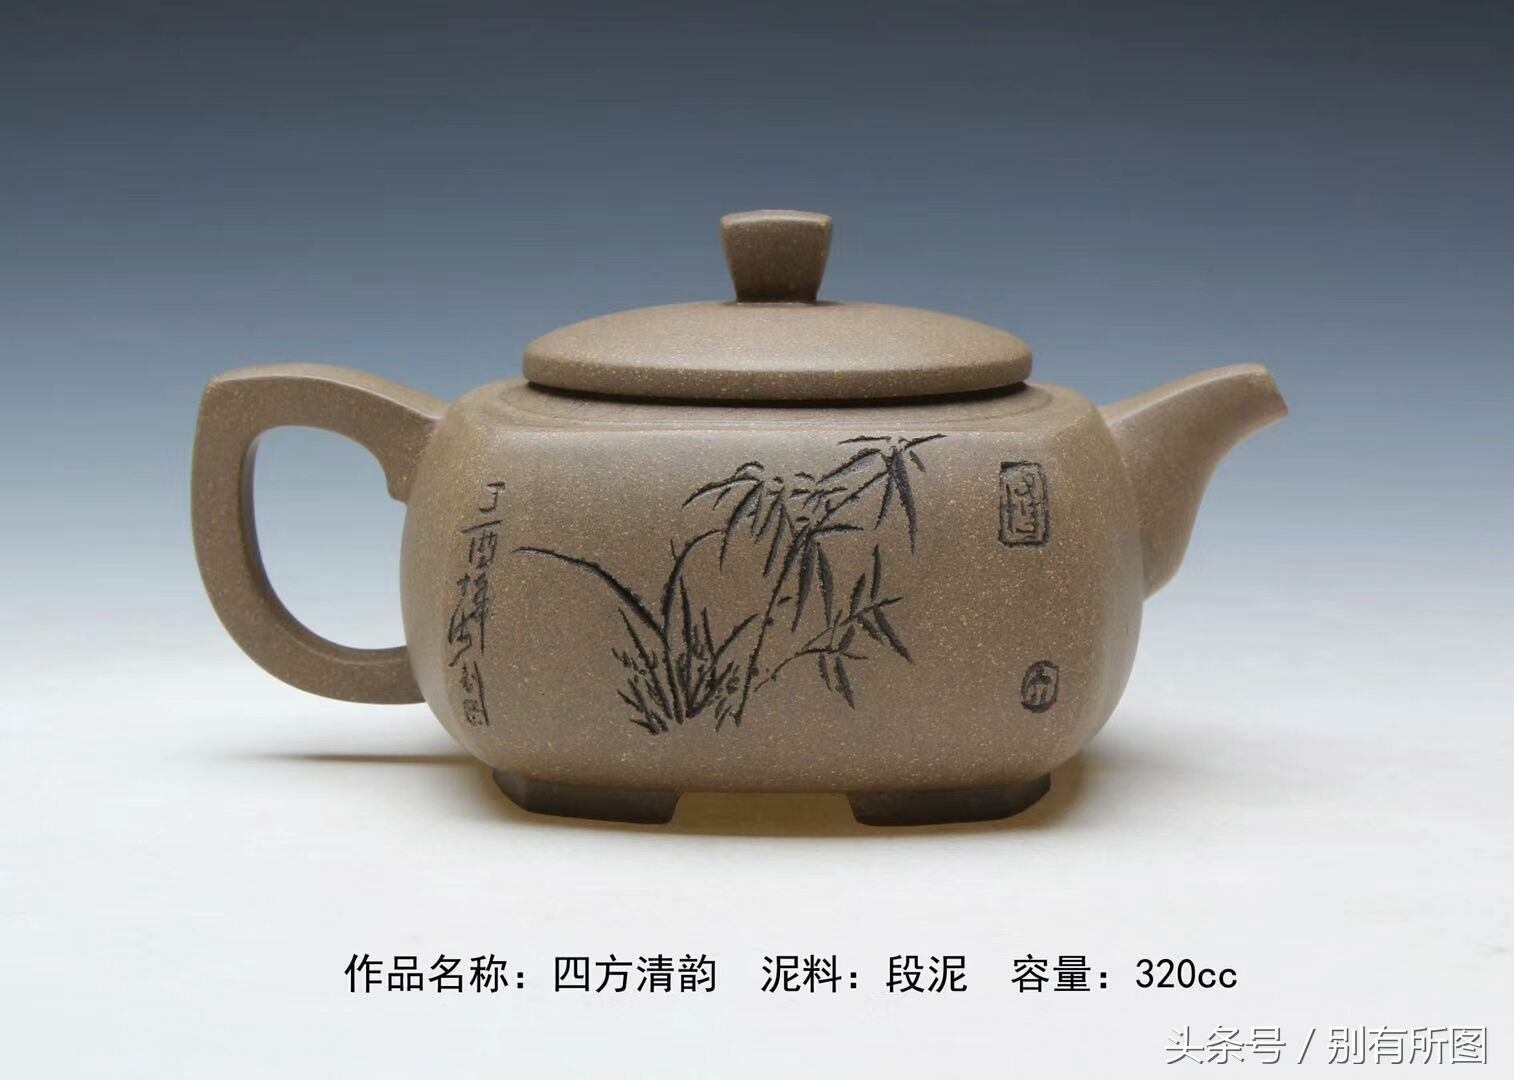 人民艺术家吴军联大师紫砂《象耳鱼尾瓶》《挂盘》段泥茶壶作品